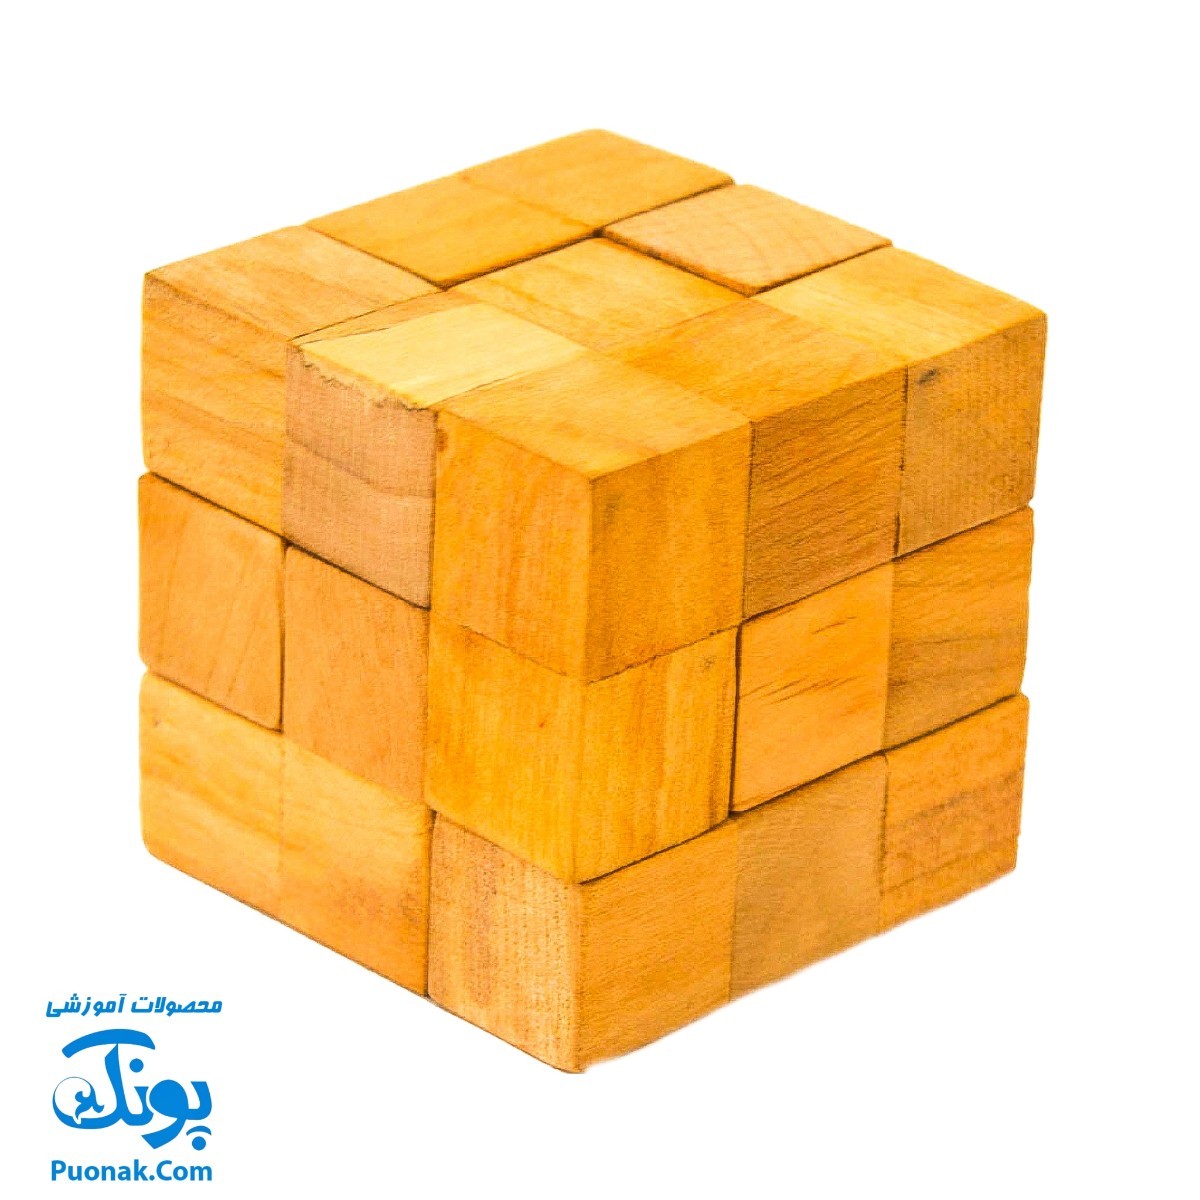 بازی فکری چوبی مدل مکعب سوما (بدون جعبه)